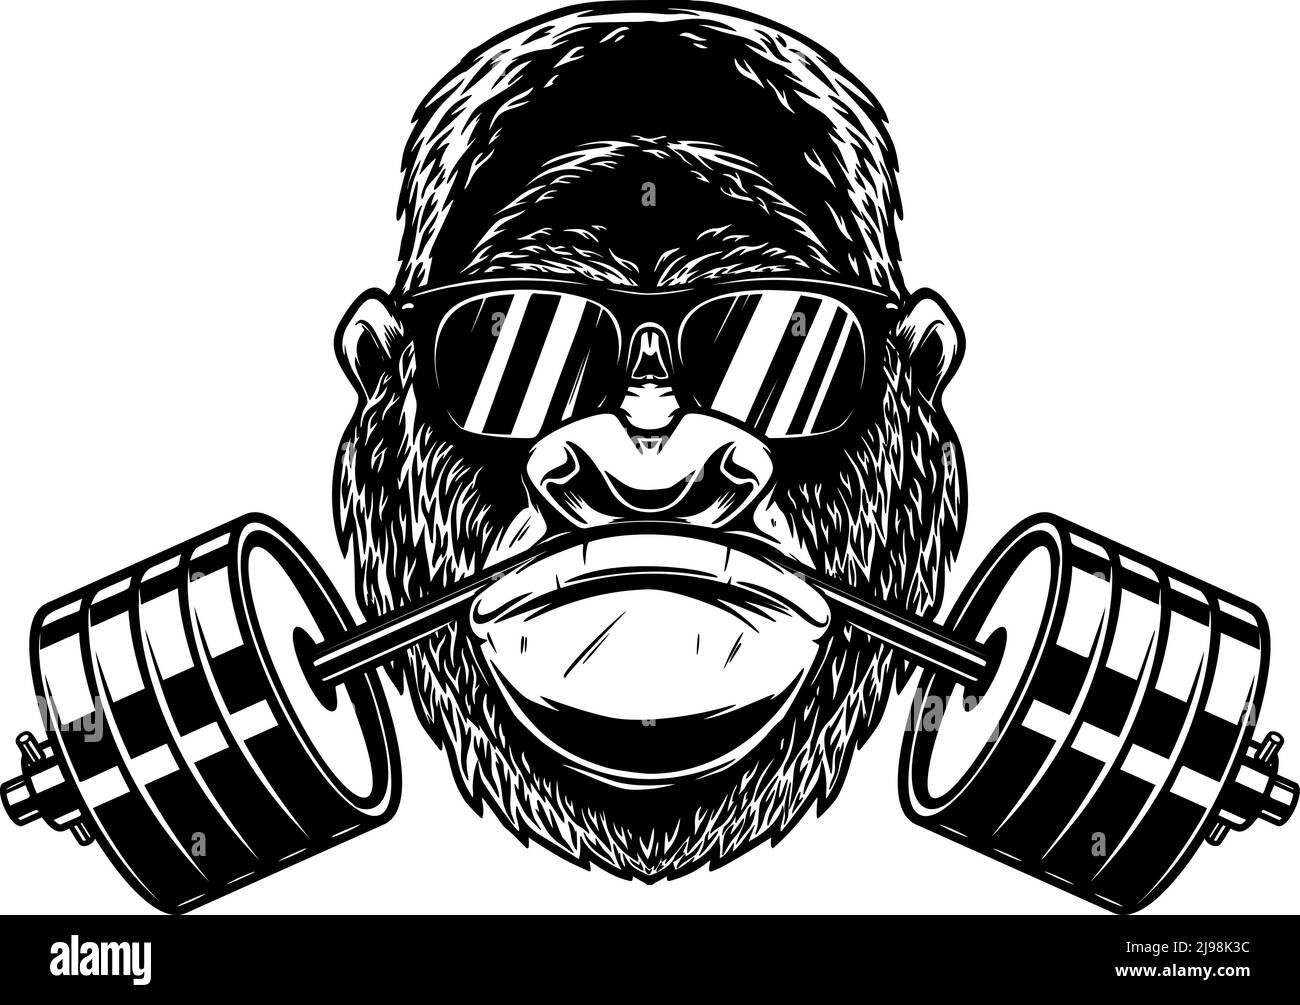 Gorilla mit Hantel im Mund. Gestaltungselement für Logo, Emblem, Schild, Poster, T-Shirt. Vektorgrafik Stock Vektor